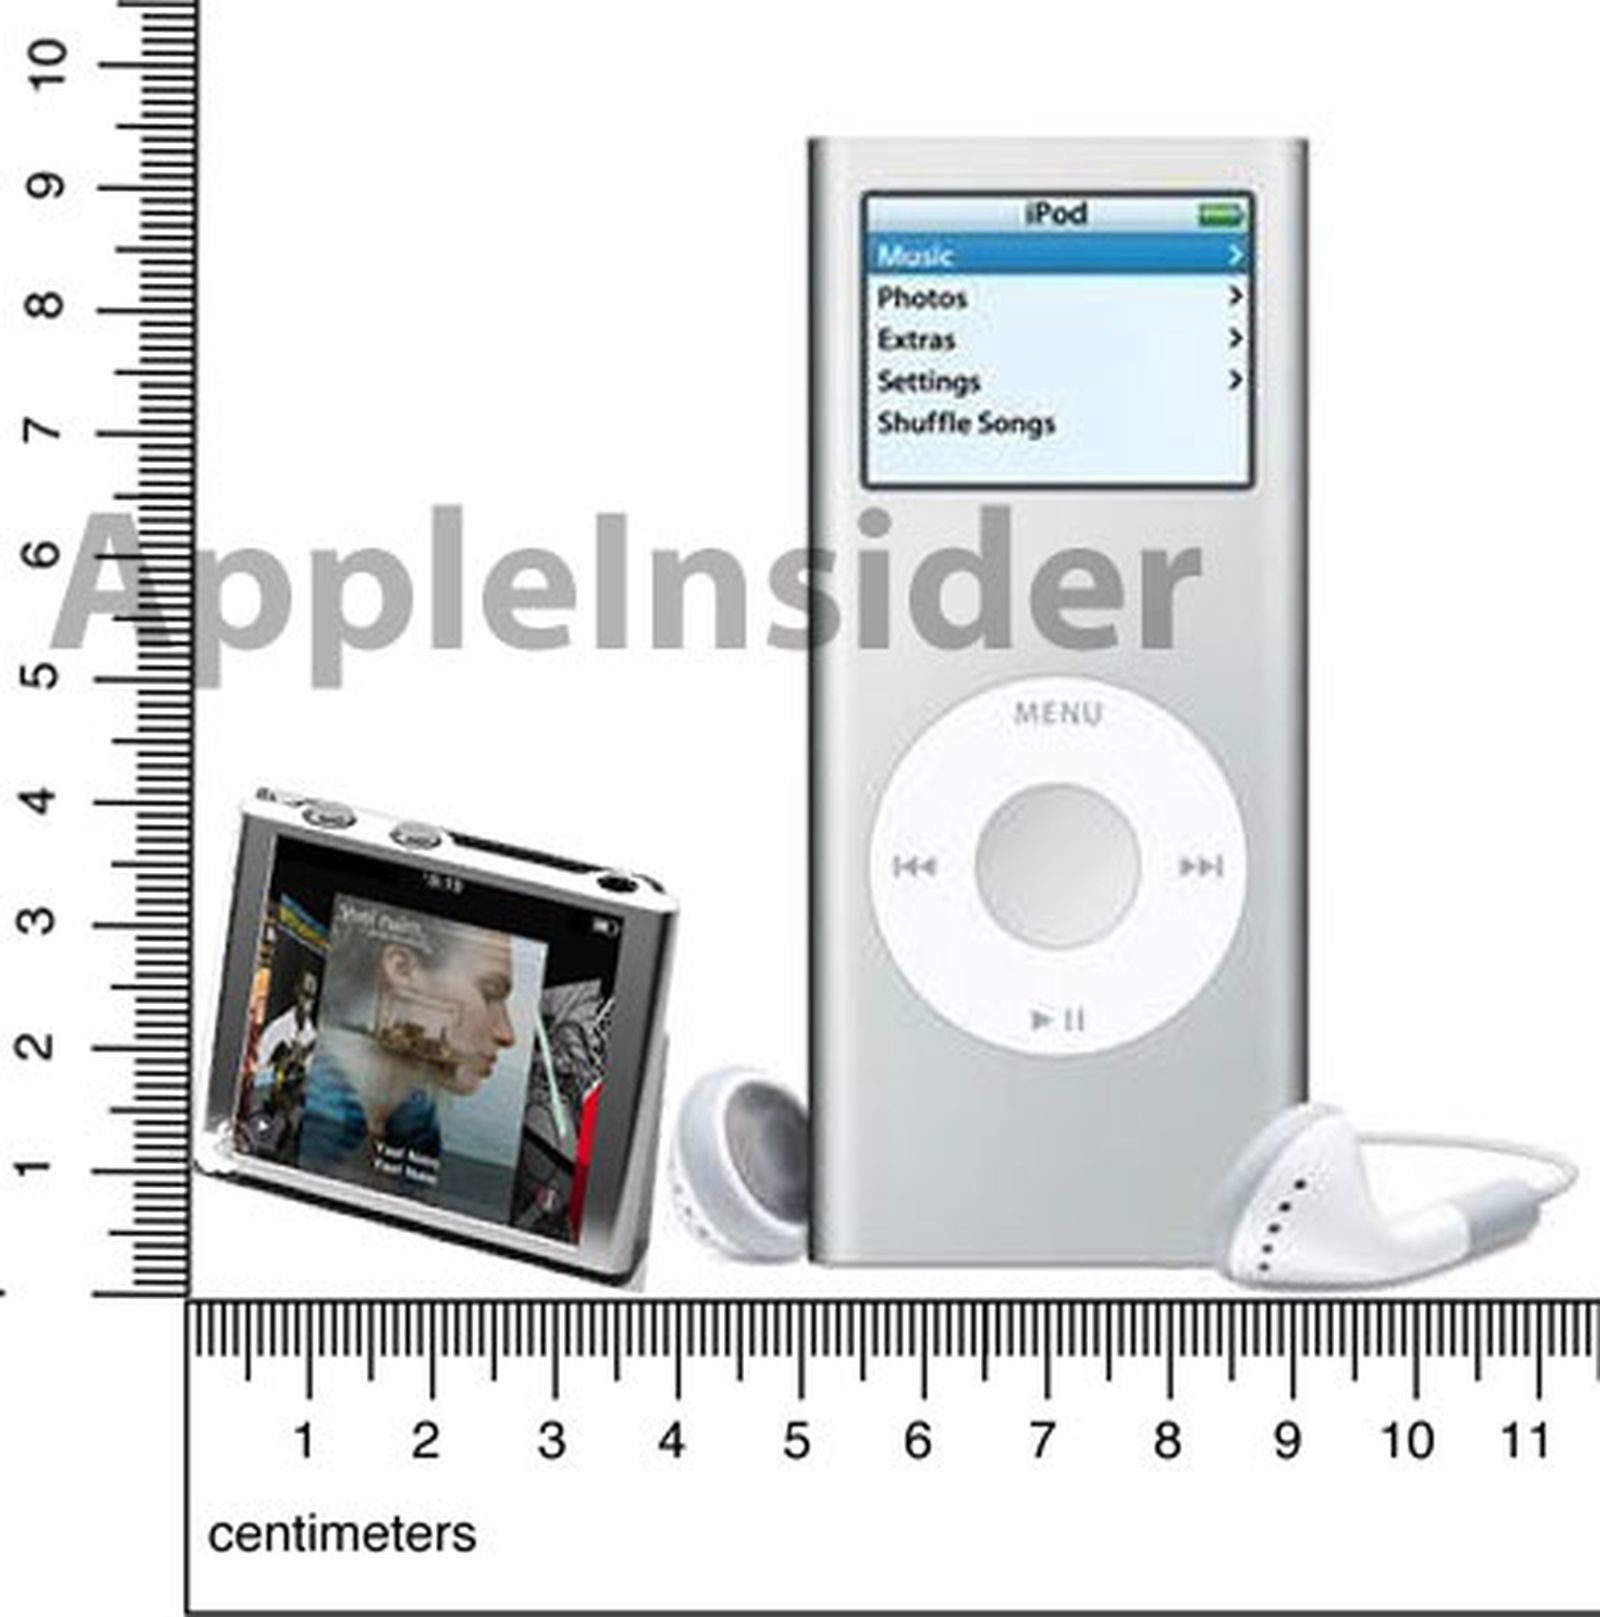 iPod nano review (2010)